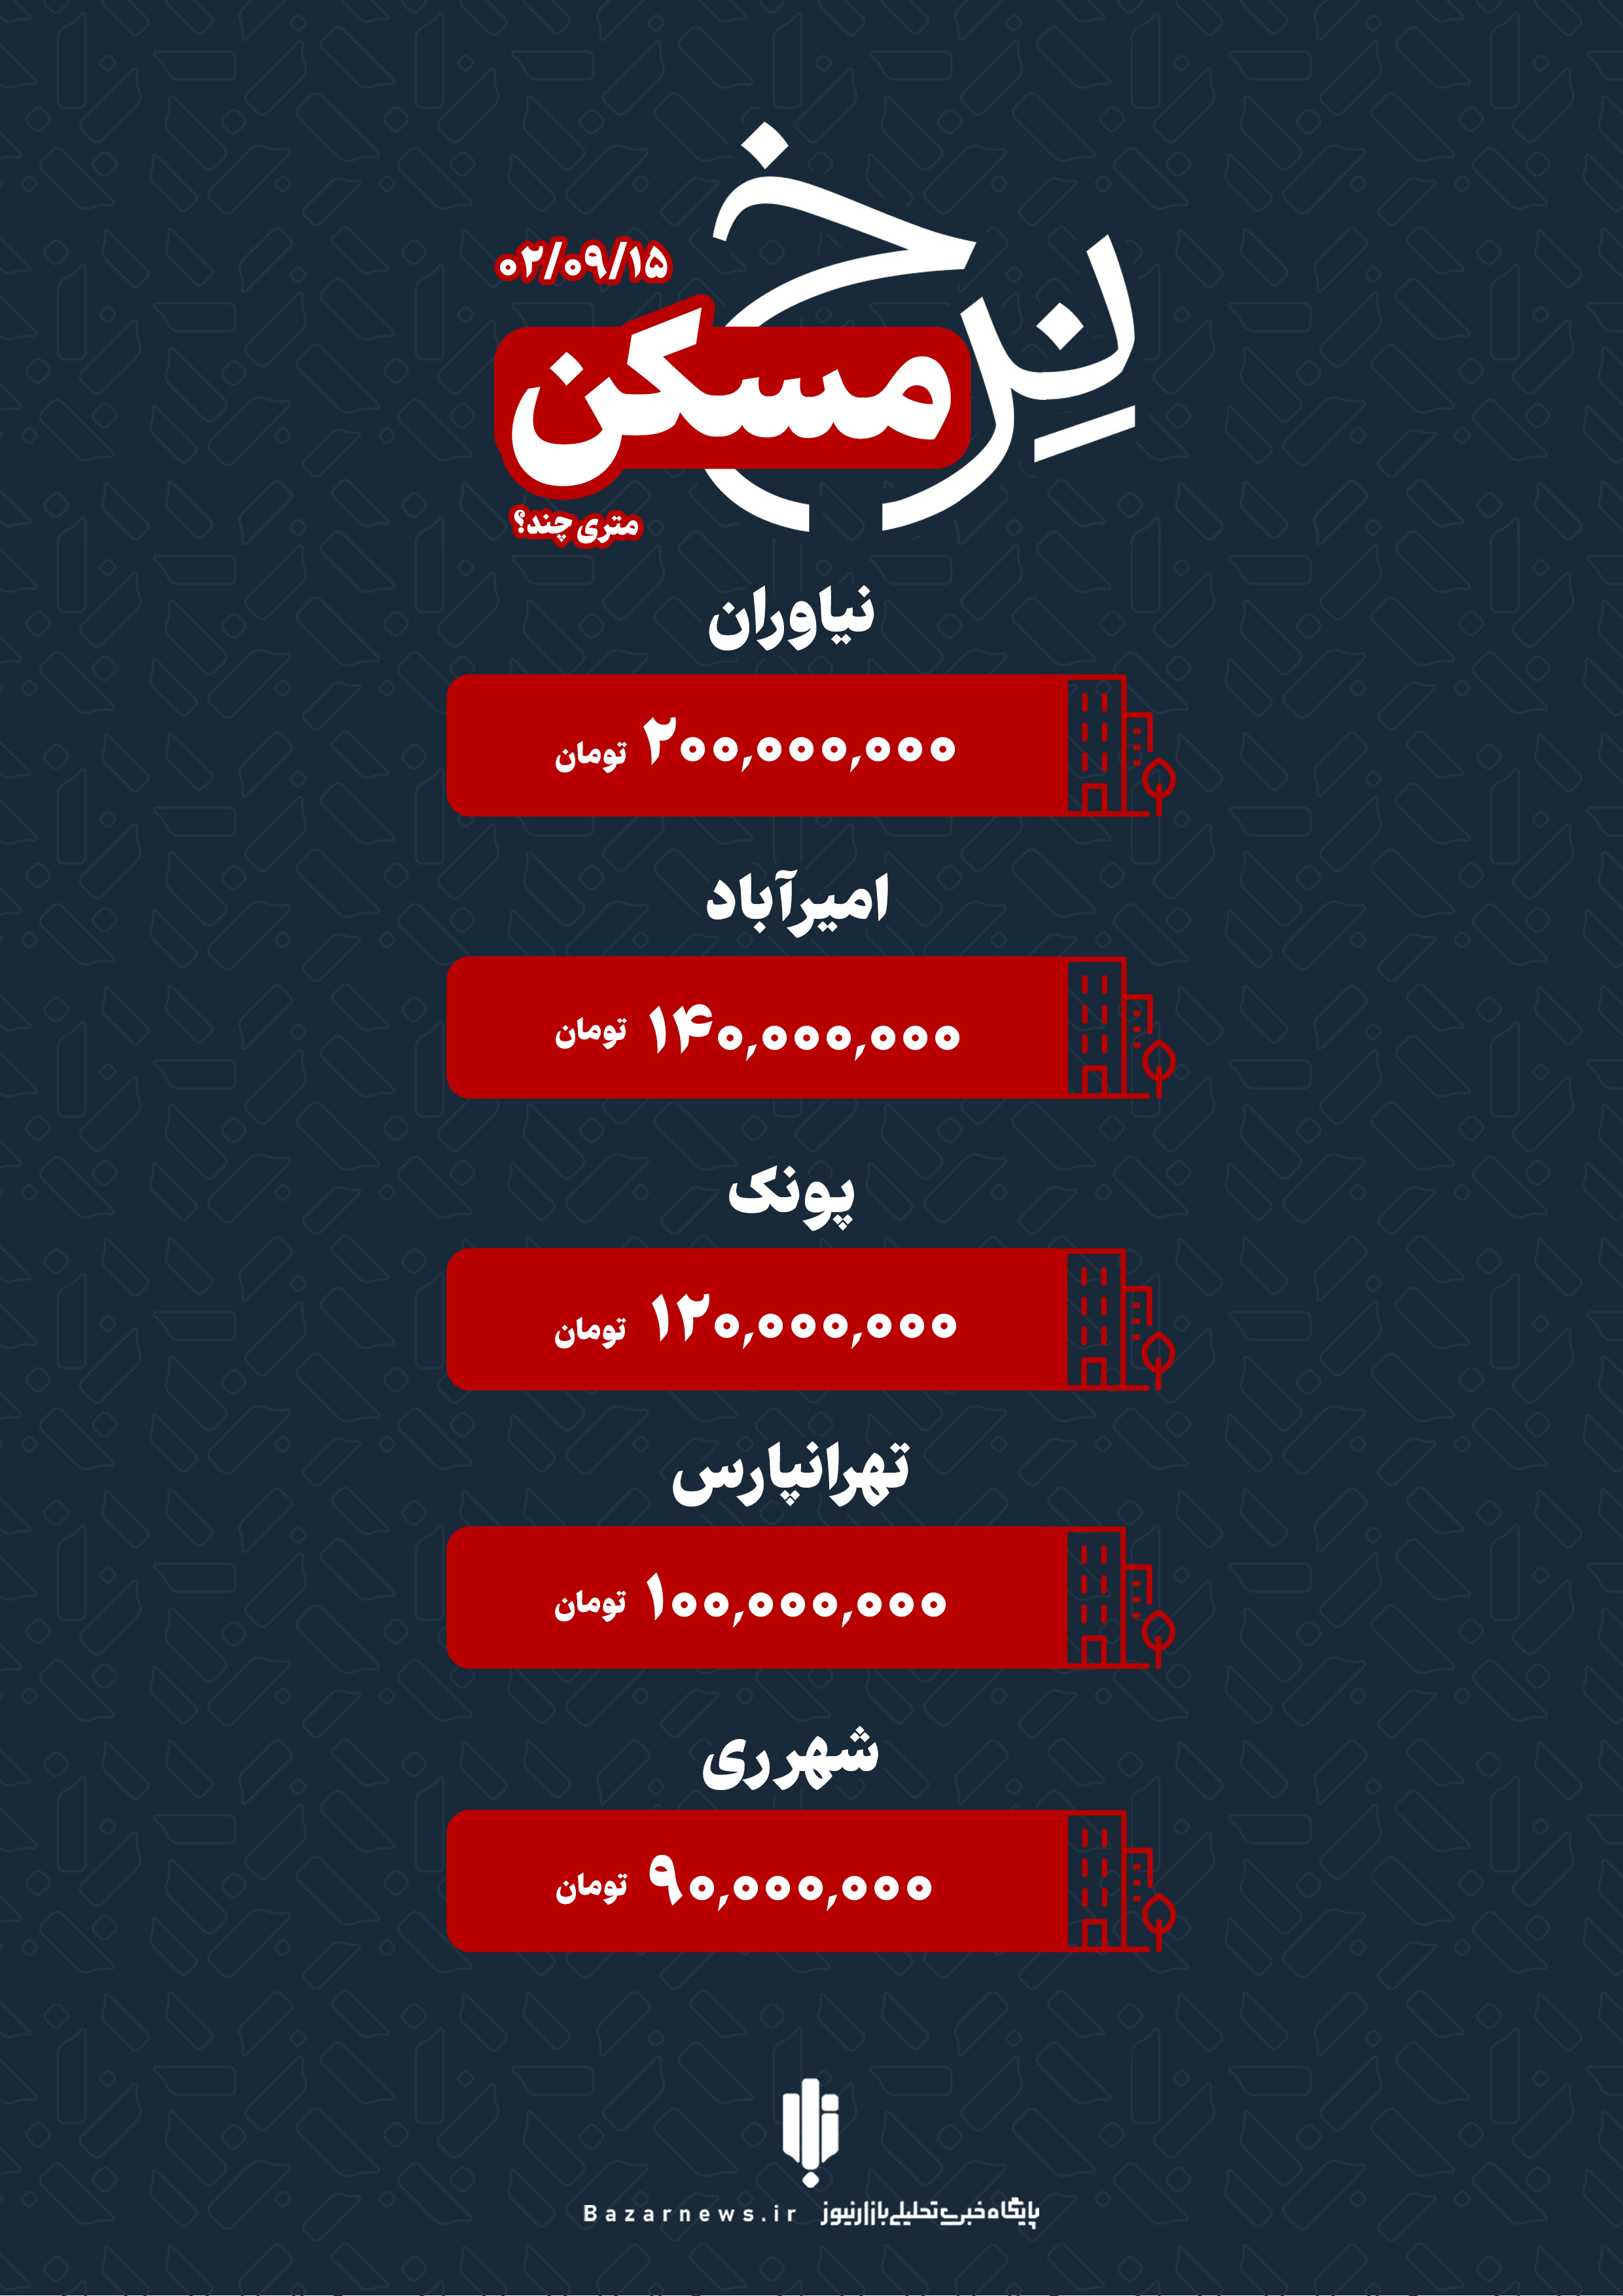 قیمت خانه در تهران چهارشنبه ۱۵ آذر+اینفوگرافیک